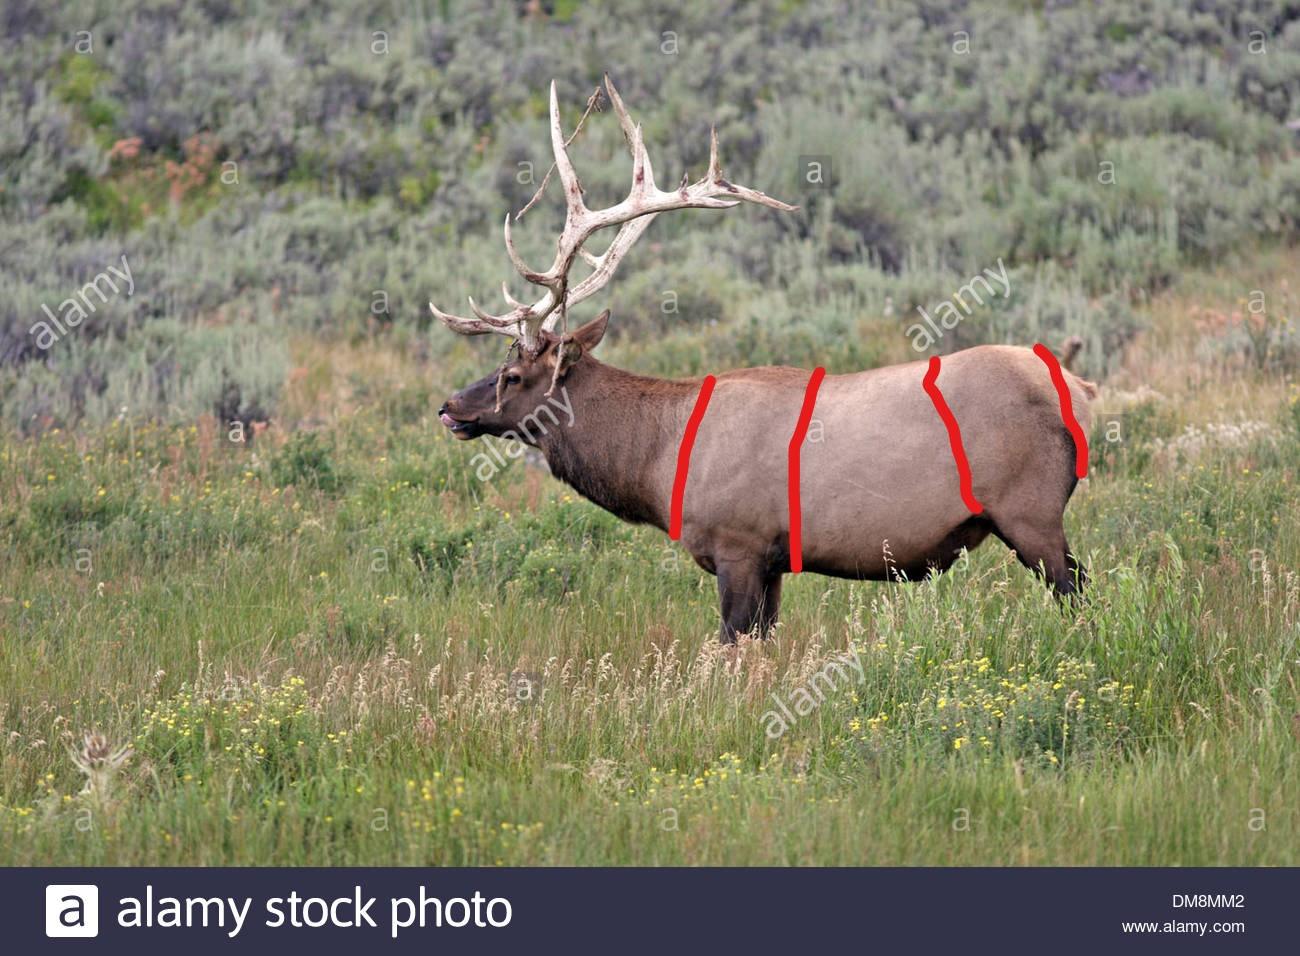 Inkedbig-bull-elk-licking-lips-with-velvet-hanging-off-antlers-DM8MM2_LI.jpg